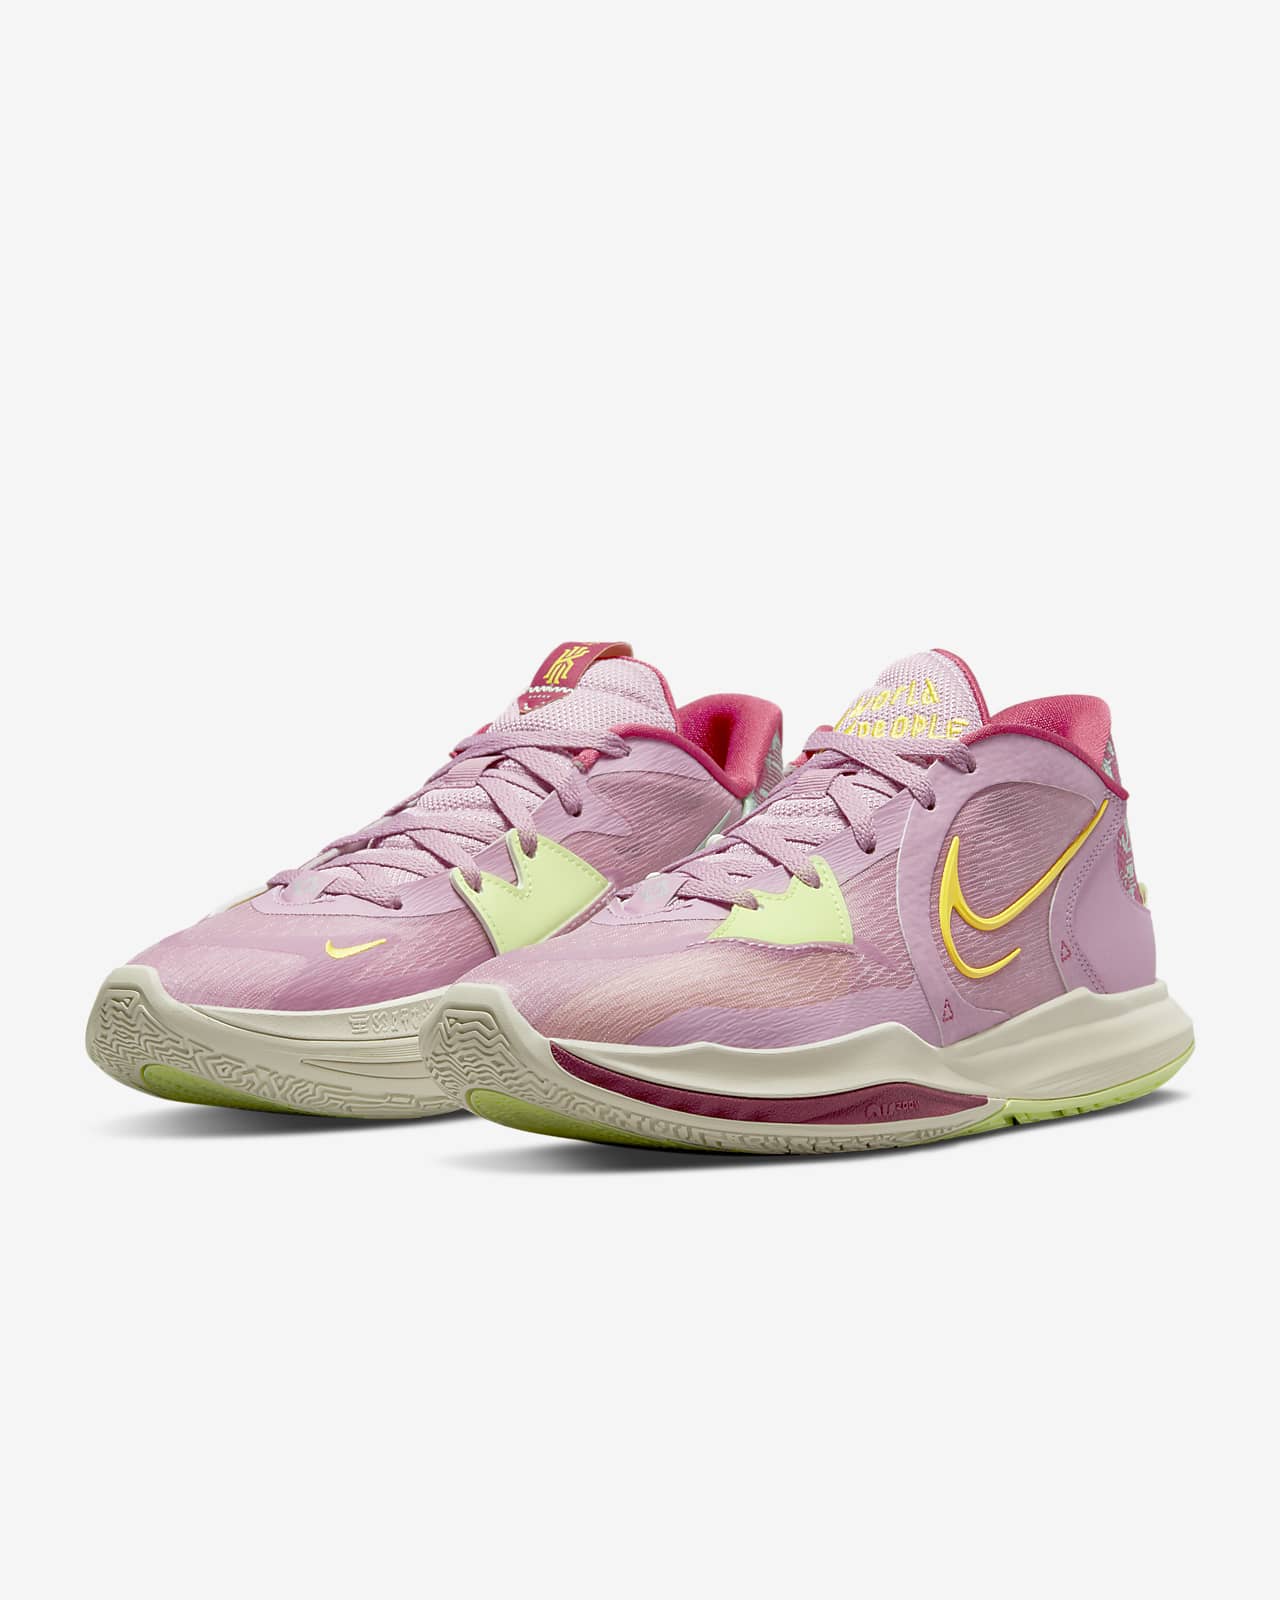 Kyrie Low 5 Basketball Shoes. Nike.com